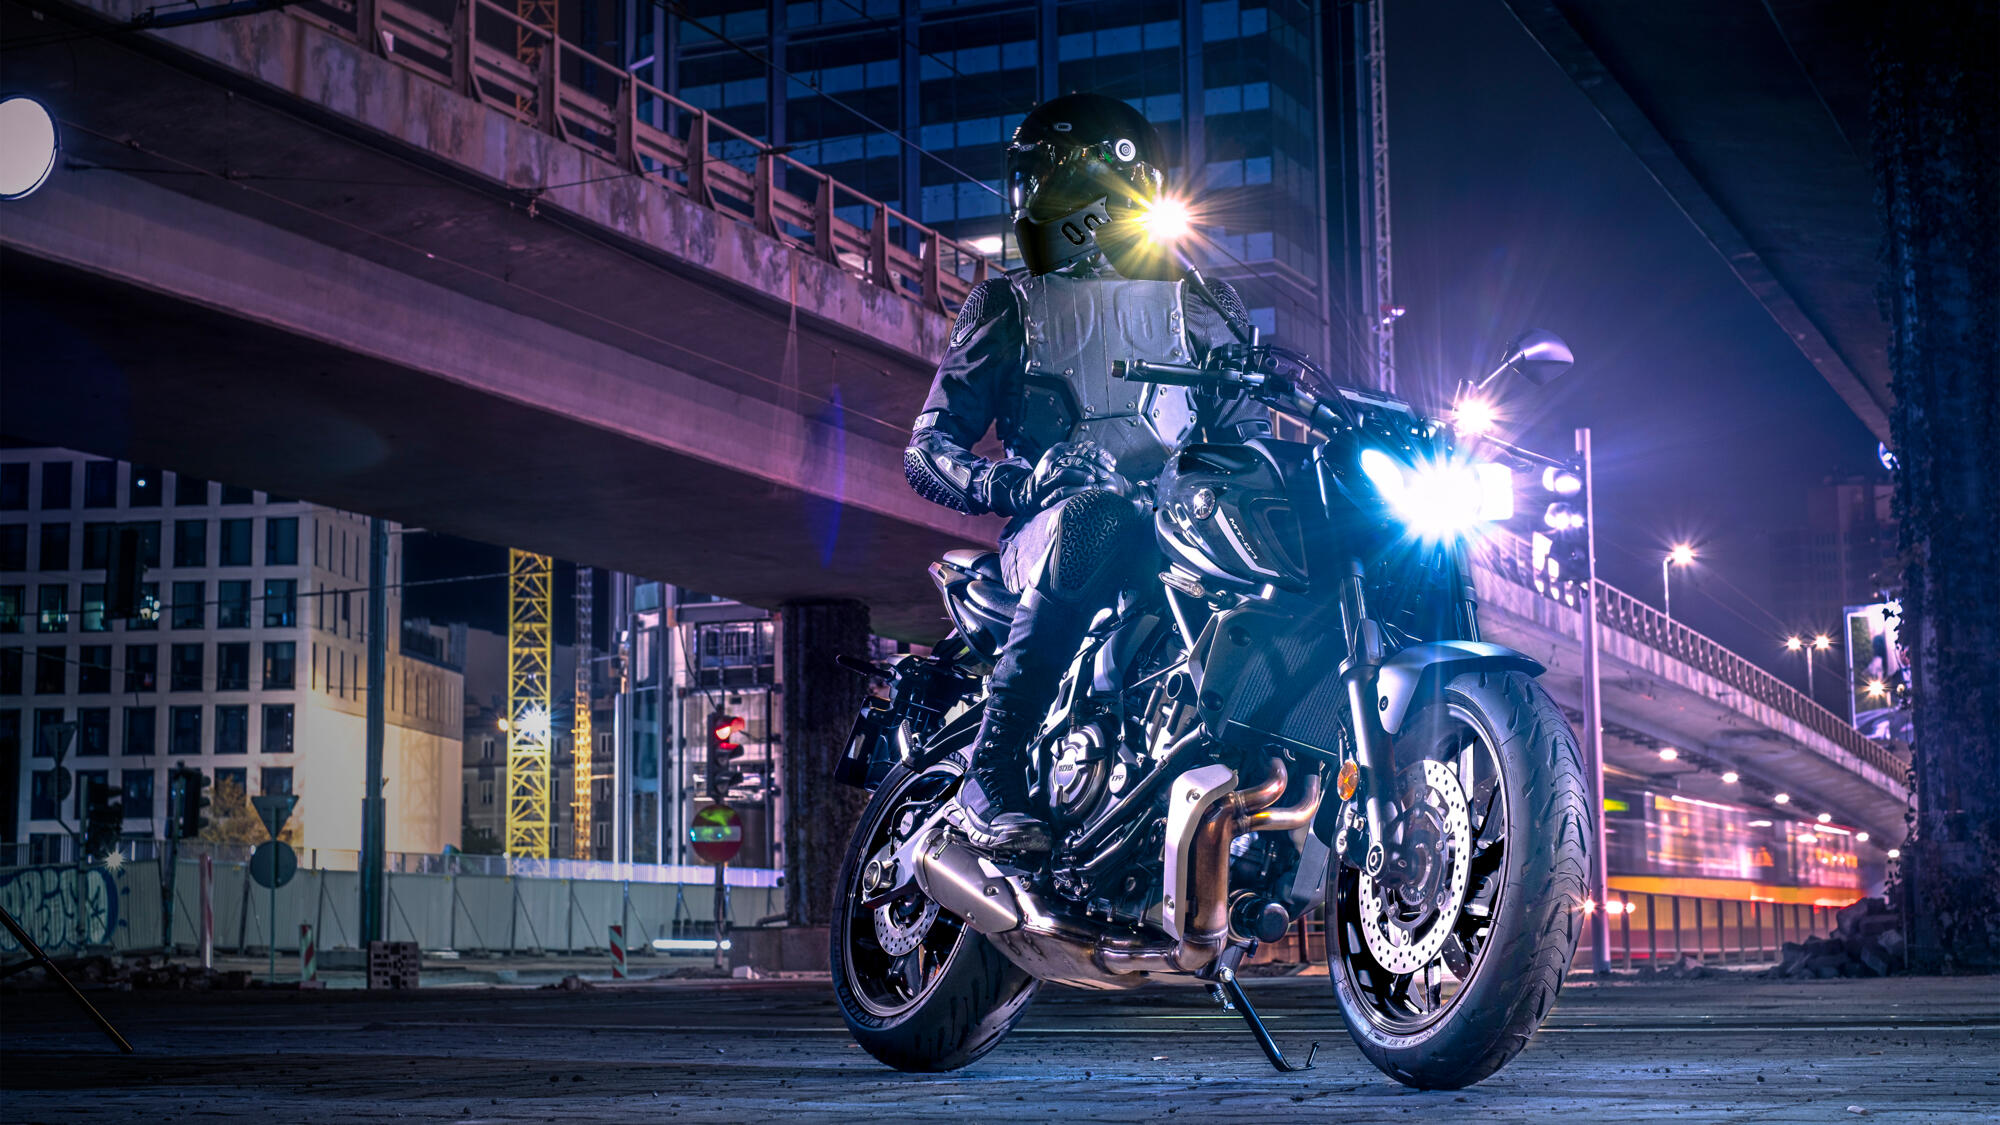 MT-07 Pure - Motorcycles - Yamaha Motor